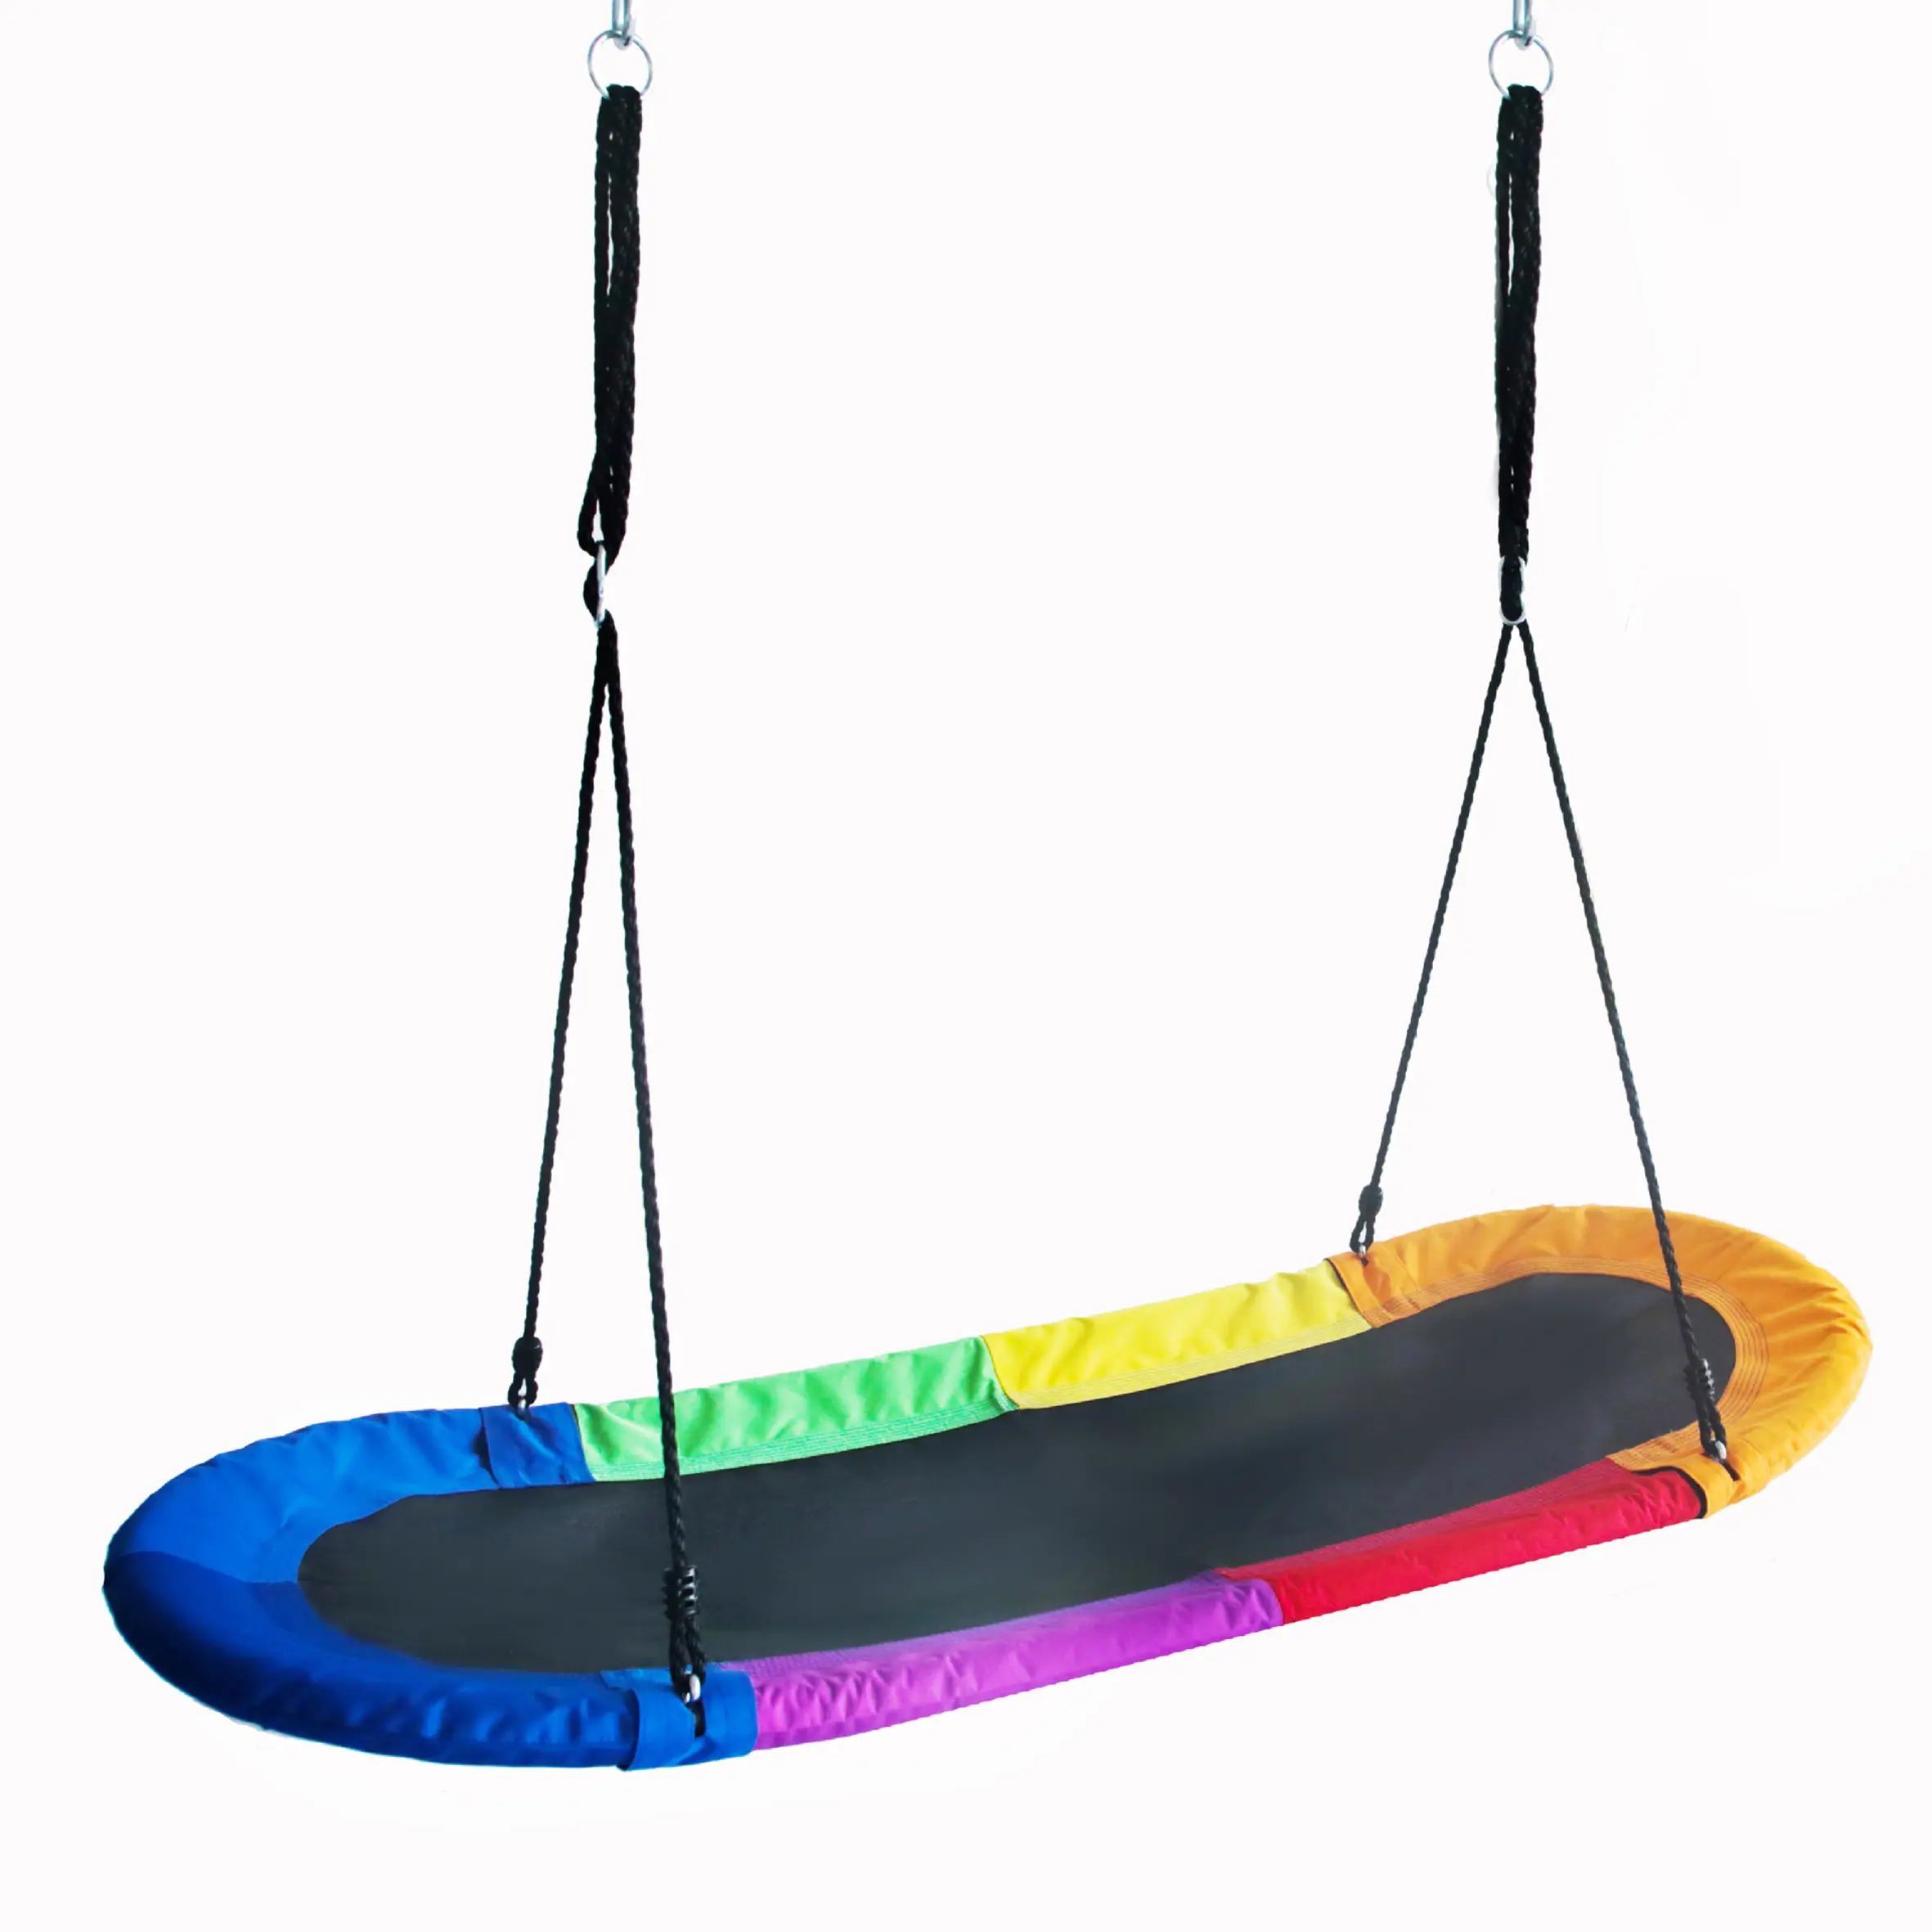 2024 prezzo basso altalena in plastica con, altezza regolabile corde sedia a colori su misura per bambini/